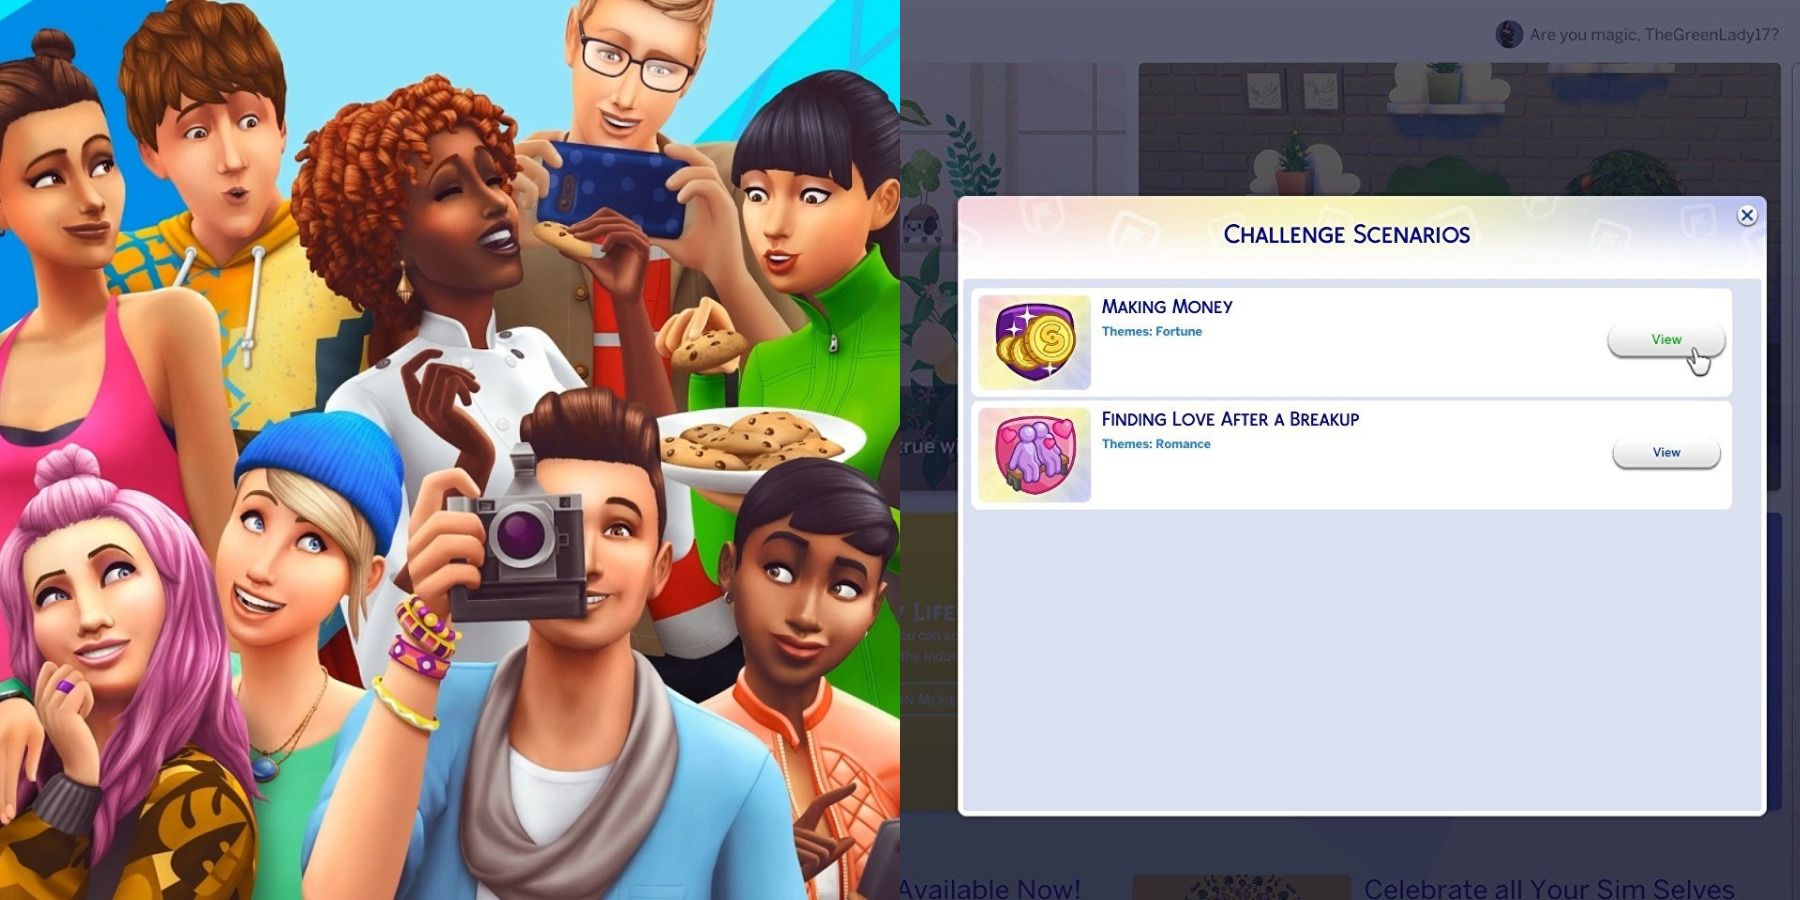 The Sims 4 scenarios feature